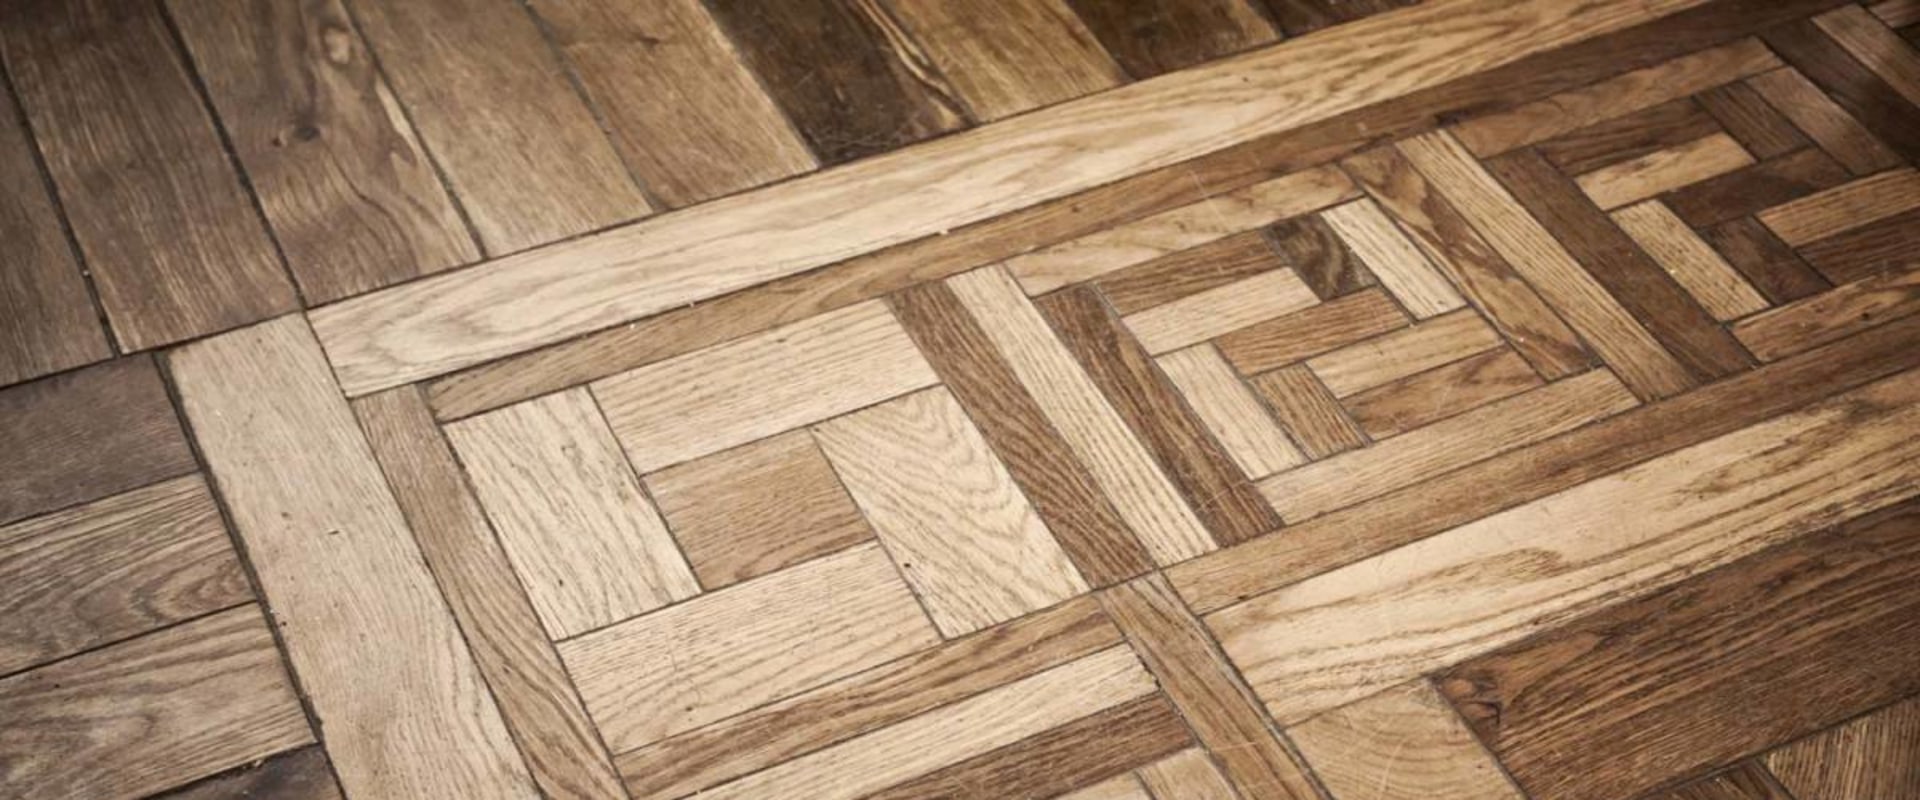 What's parquet flooring?